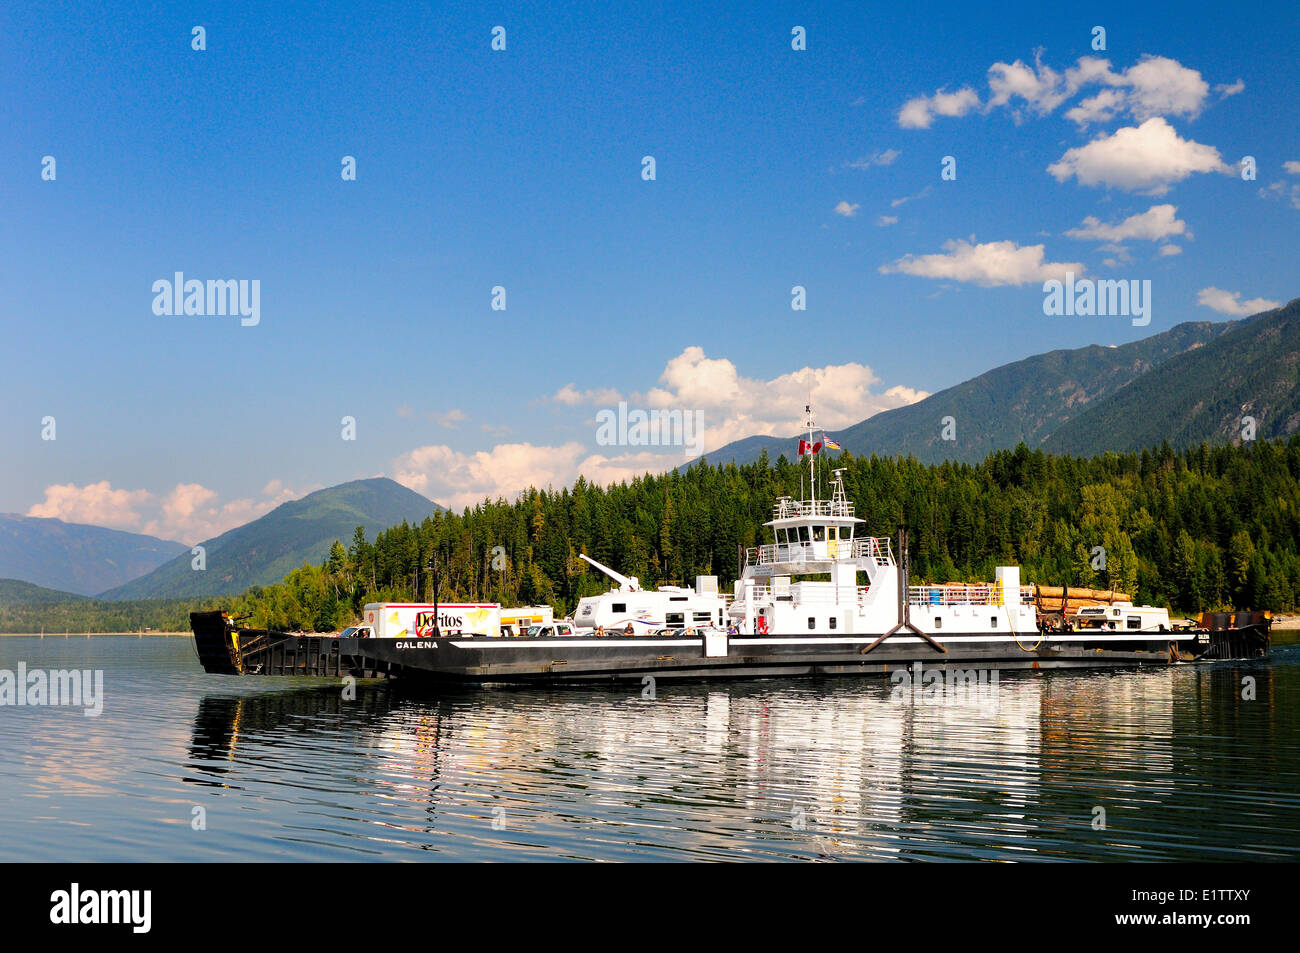 El ferry, D.E.V. Galena Galena, deja Bay en la flecha superior en ruta al refugio Lago Bay, BC. Foto de stock